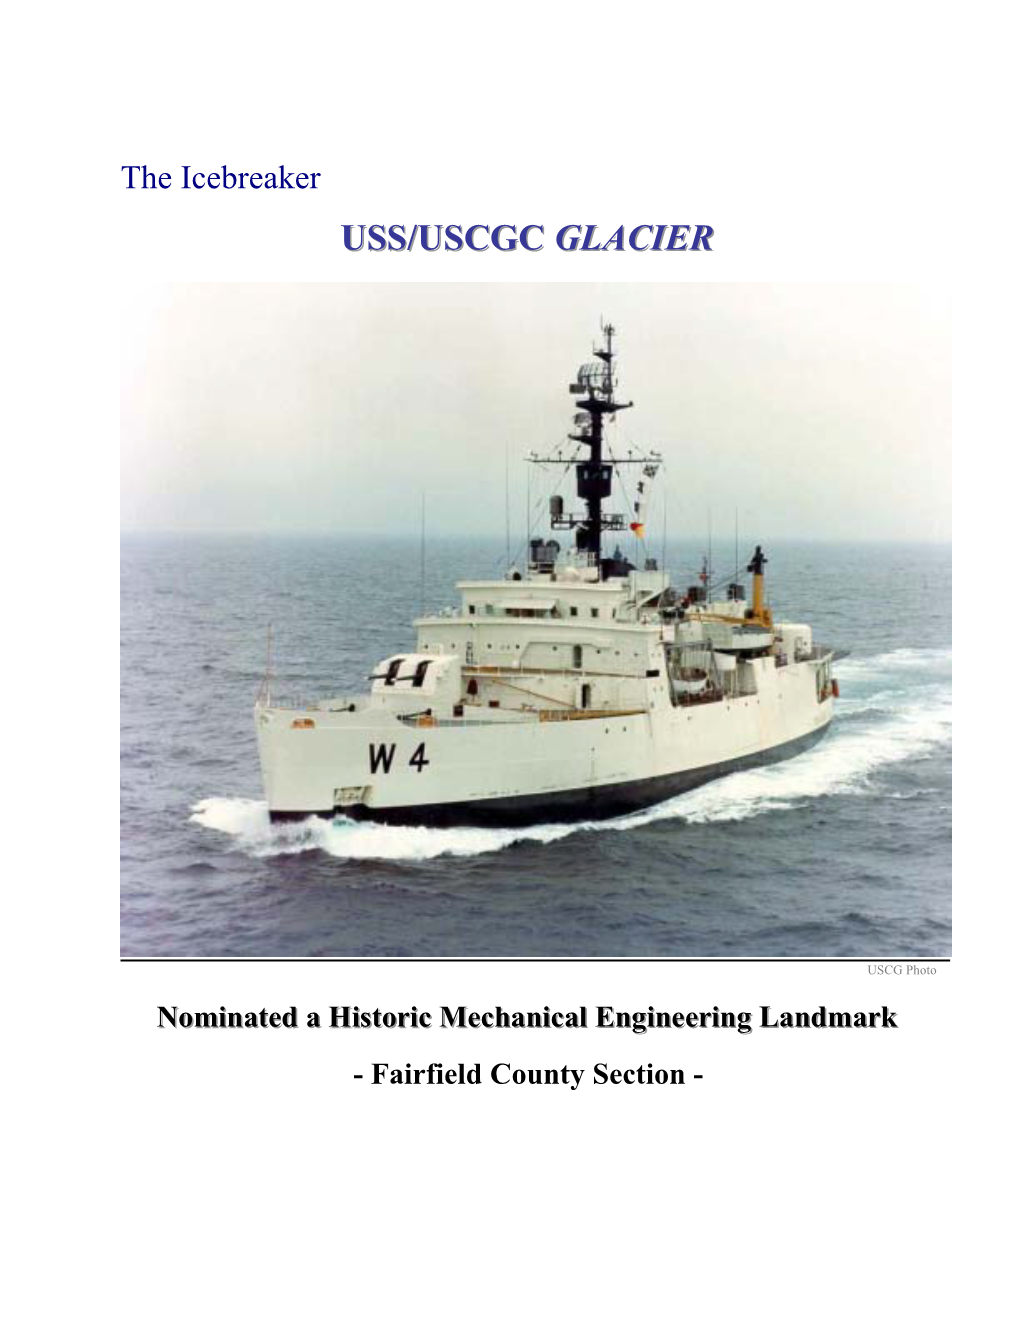 USS/USCGC Glacier to Be Known As the MV Glacier GB4